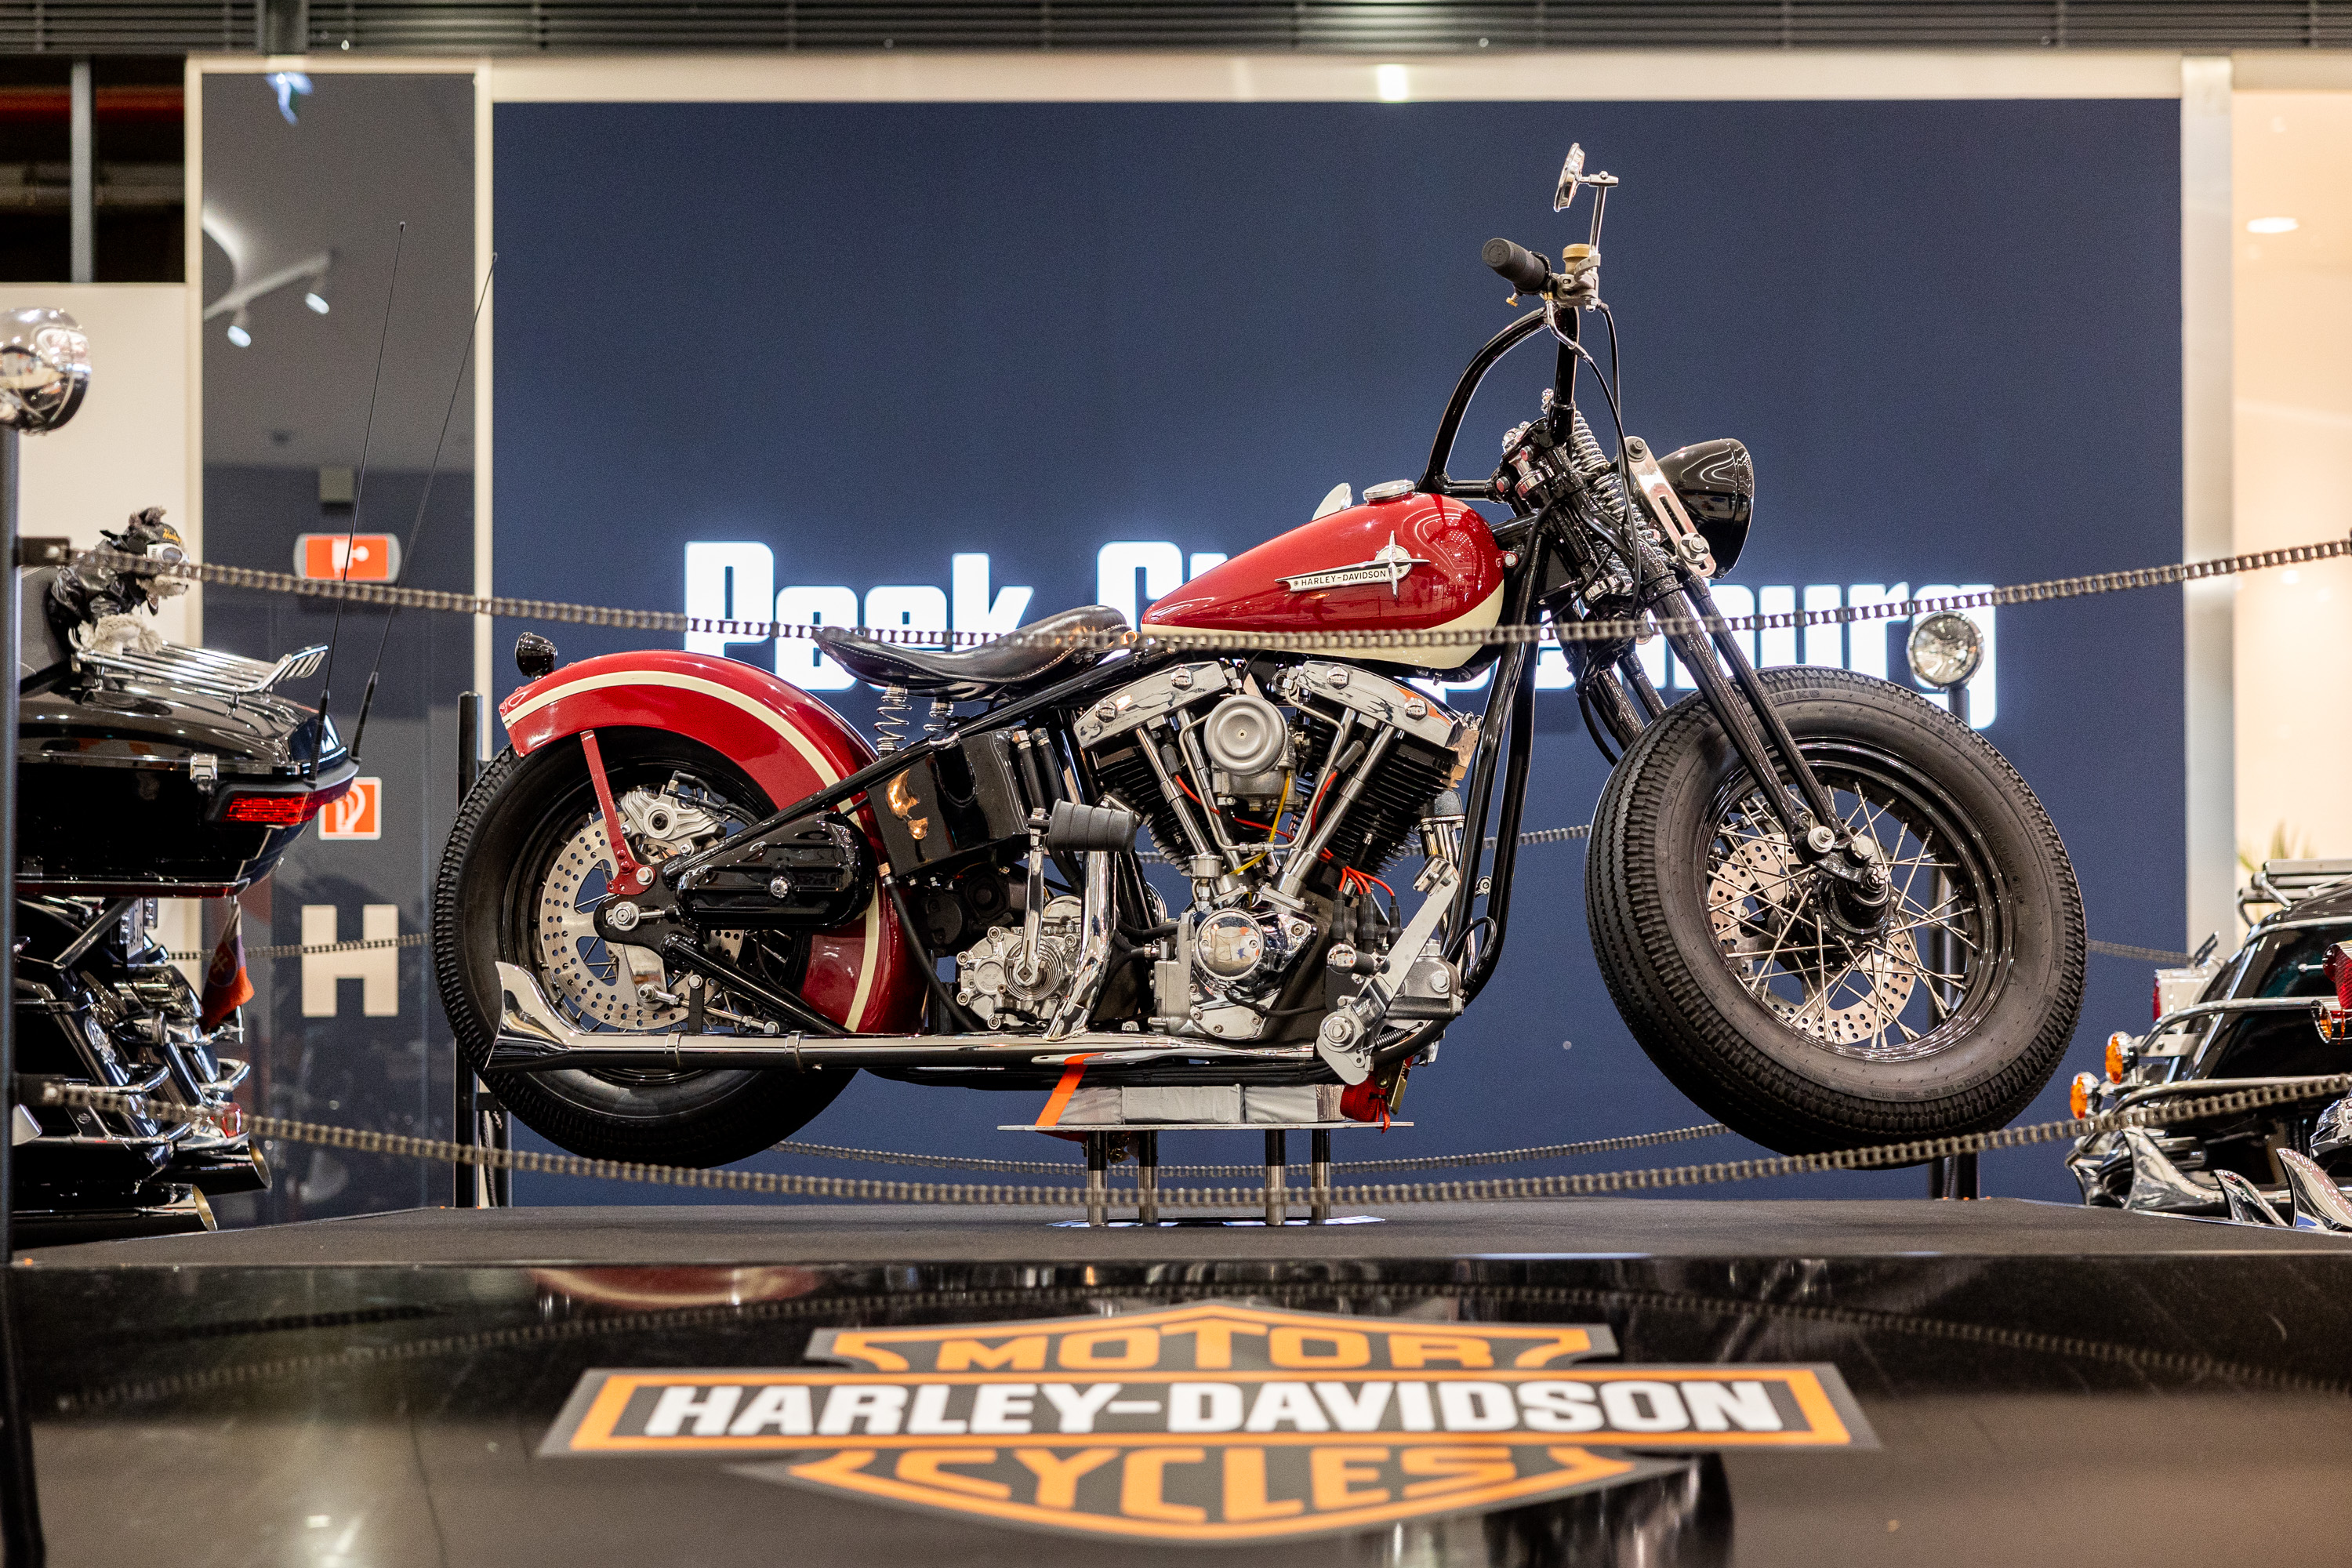 Do Bratislavy prišla legenda Harley-Davidson